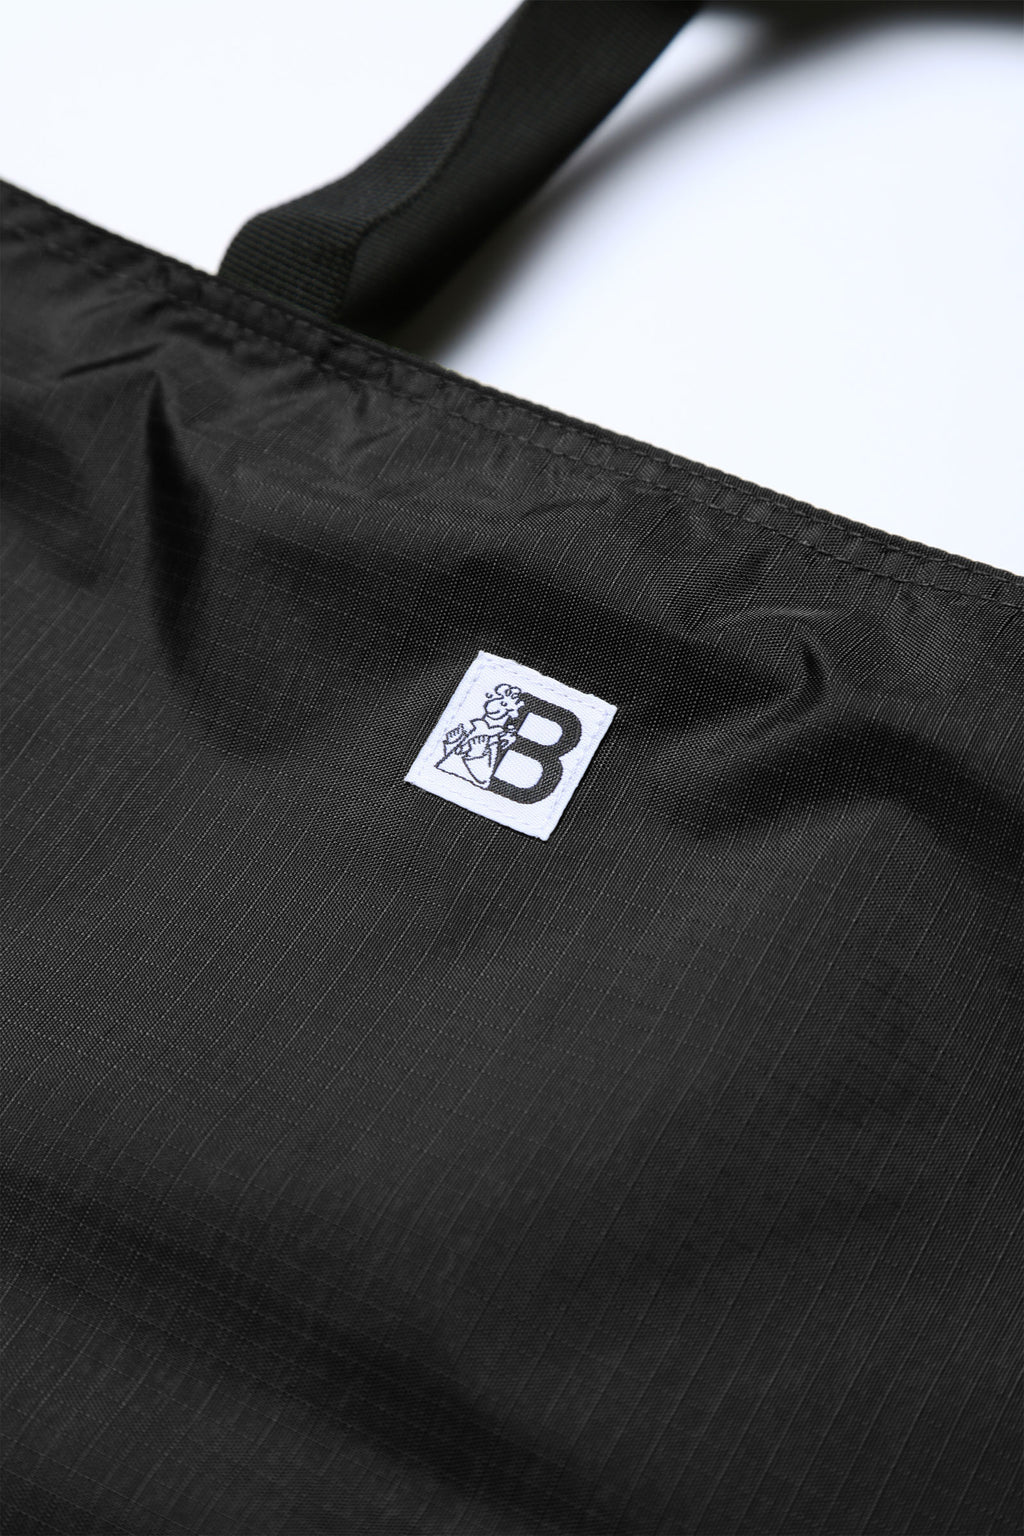 Blacksmith - Ripstop Tote Bag - Black